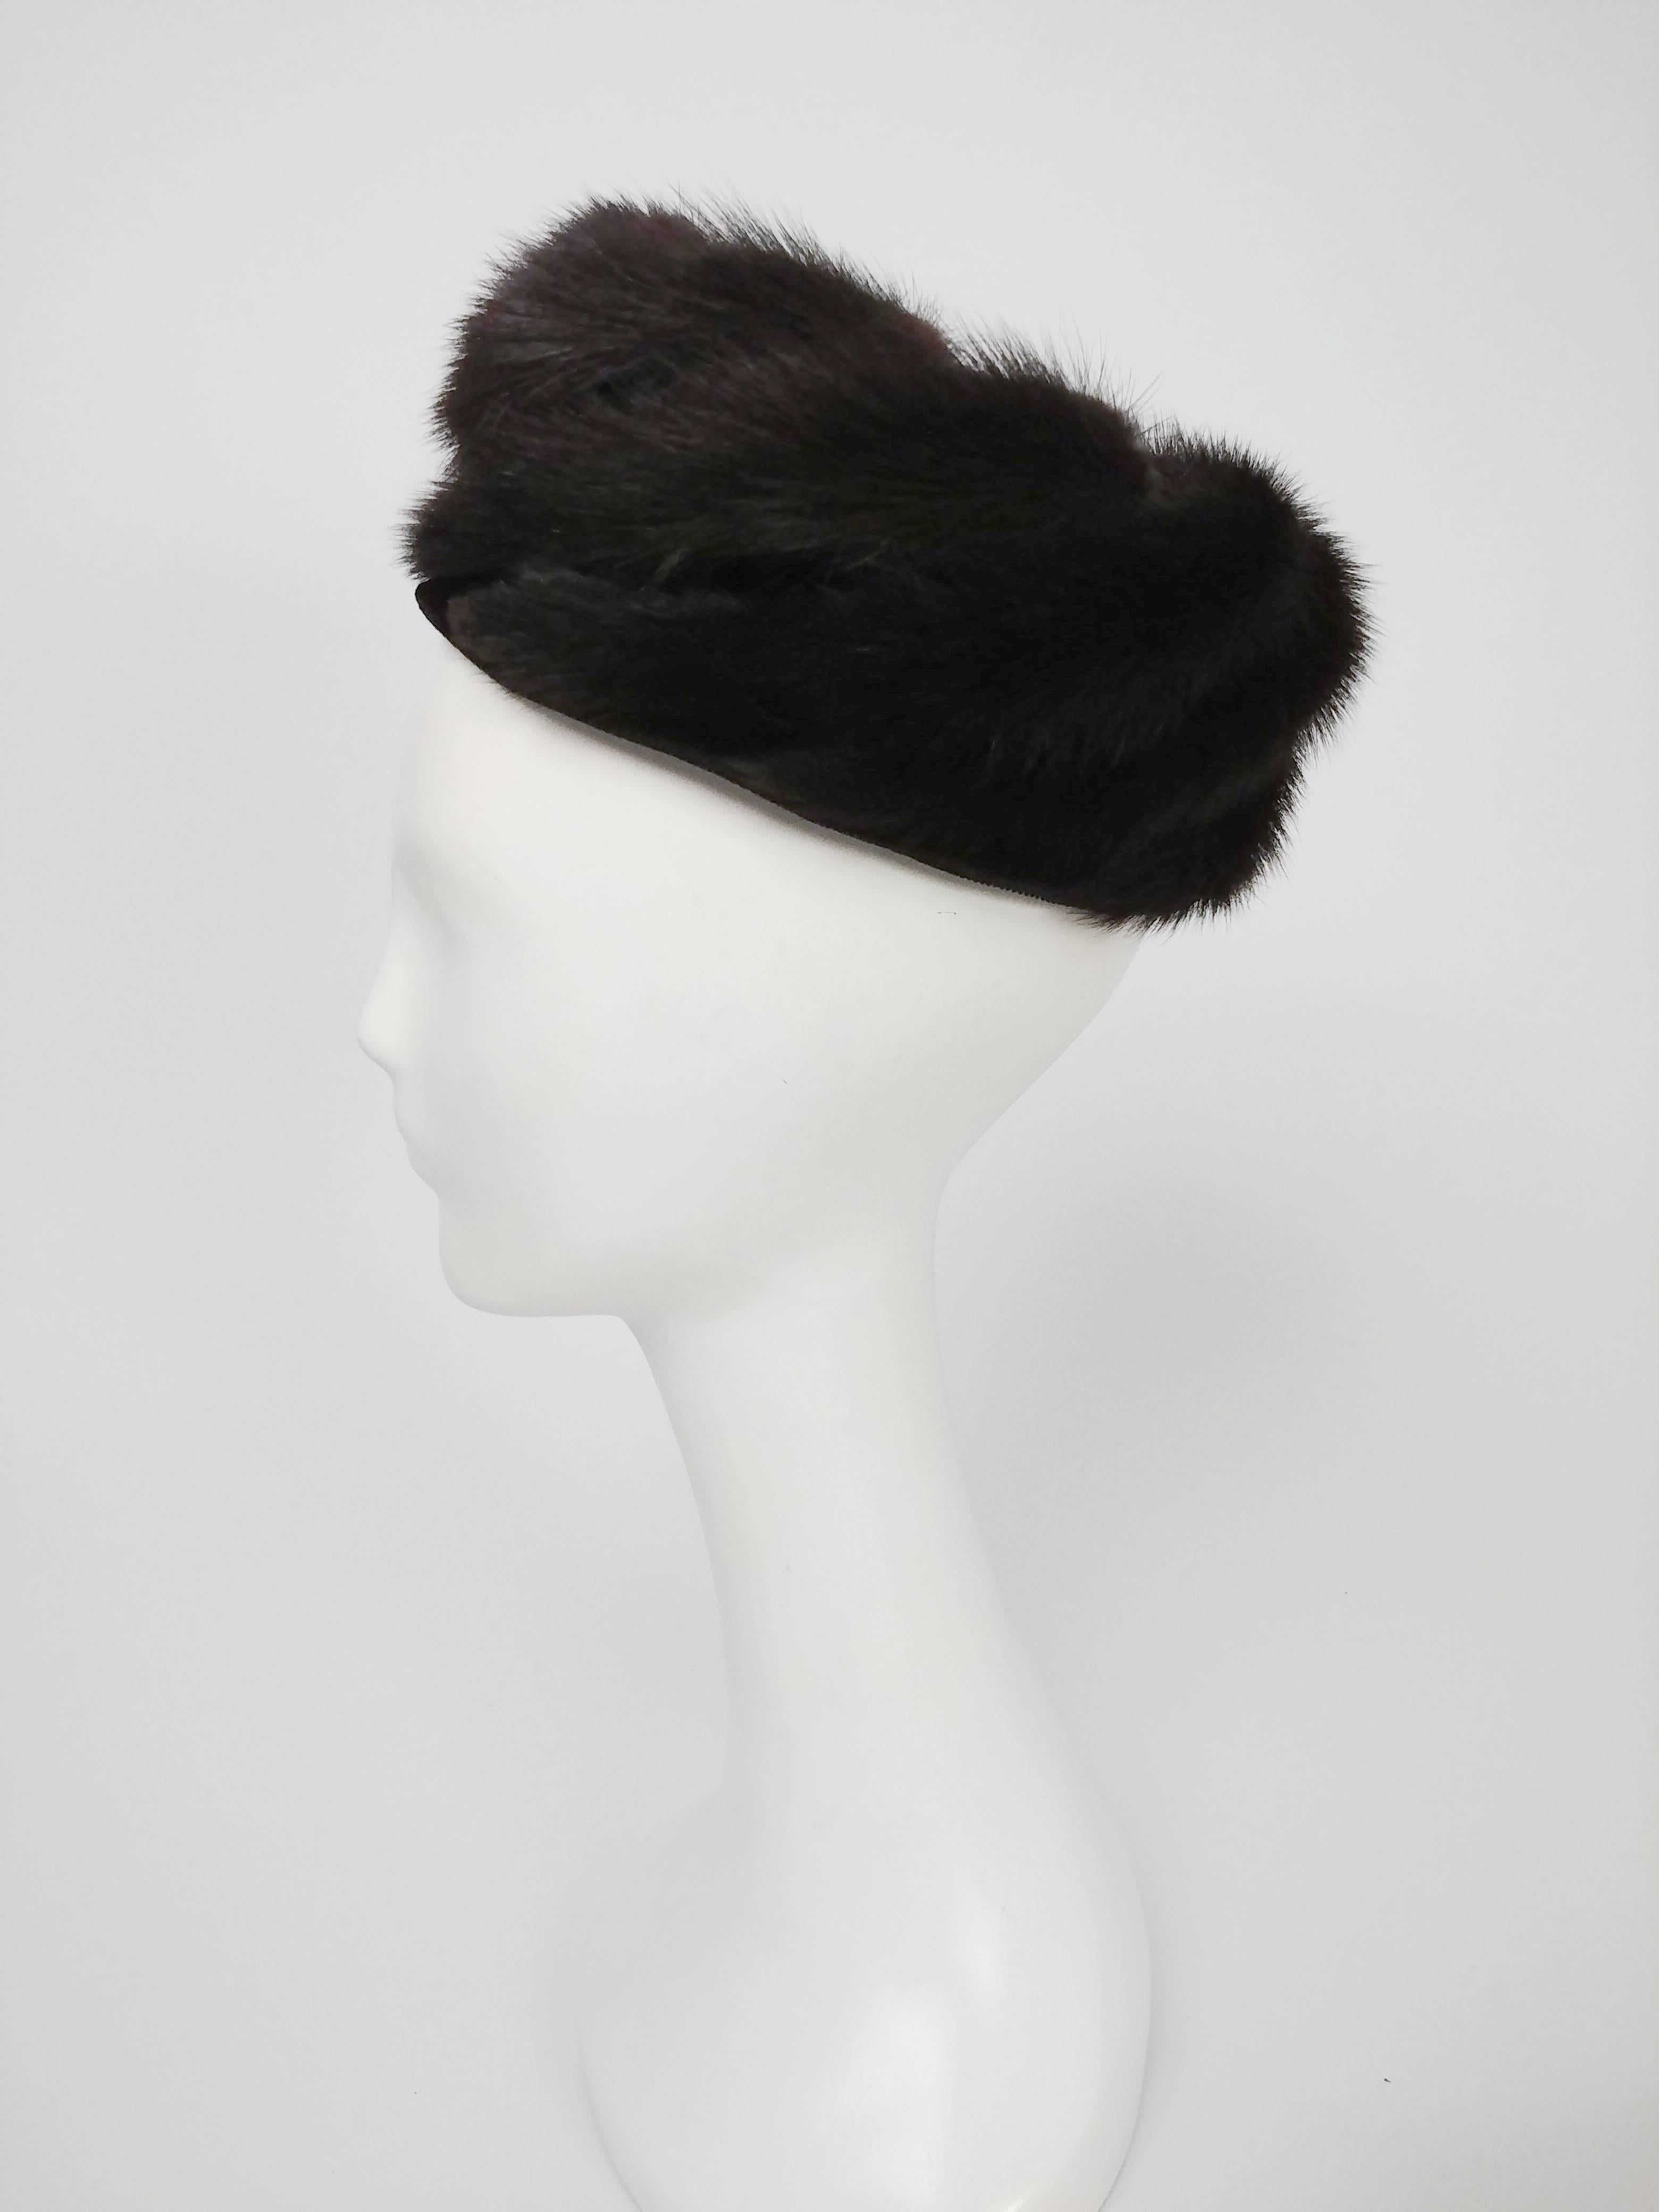 1960s Espresso Dark Brown Mink Hat. Spiral pattern in fur, lined with black velvet. 